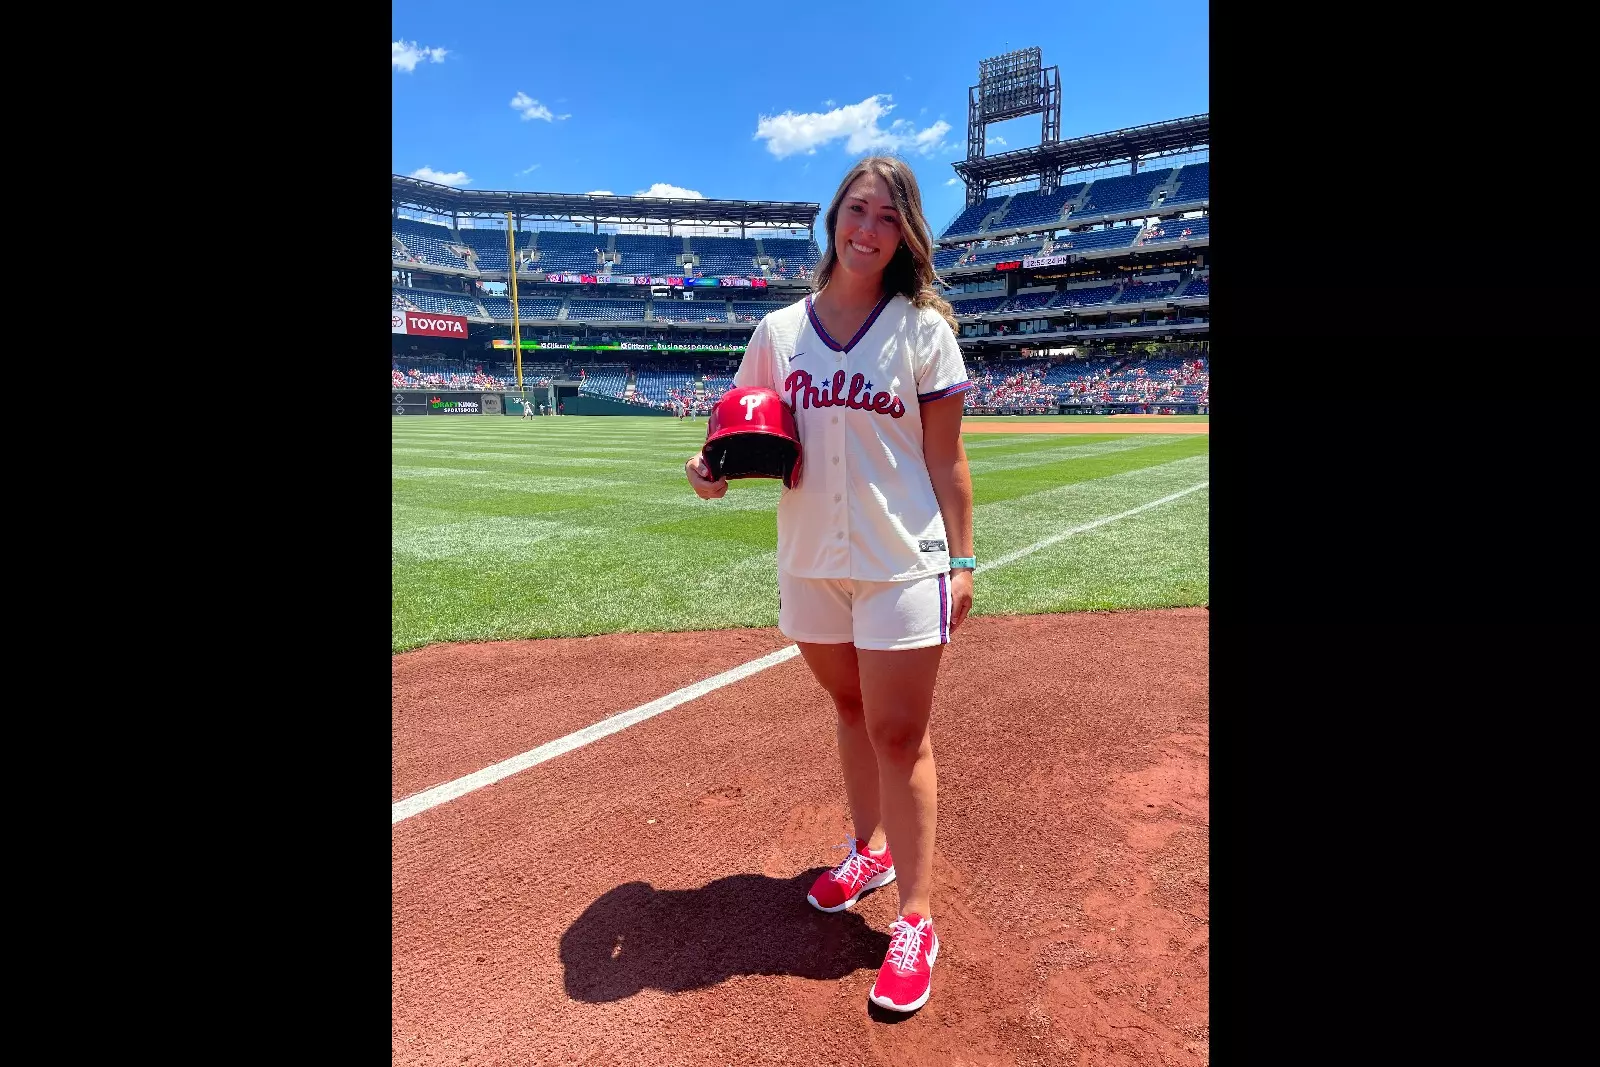 NJ teacher by day side-hustles as Phillies ball girl